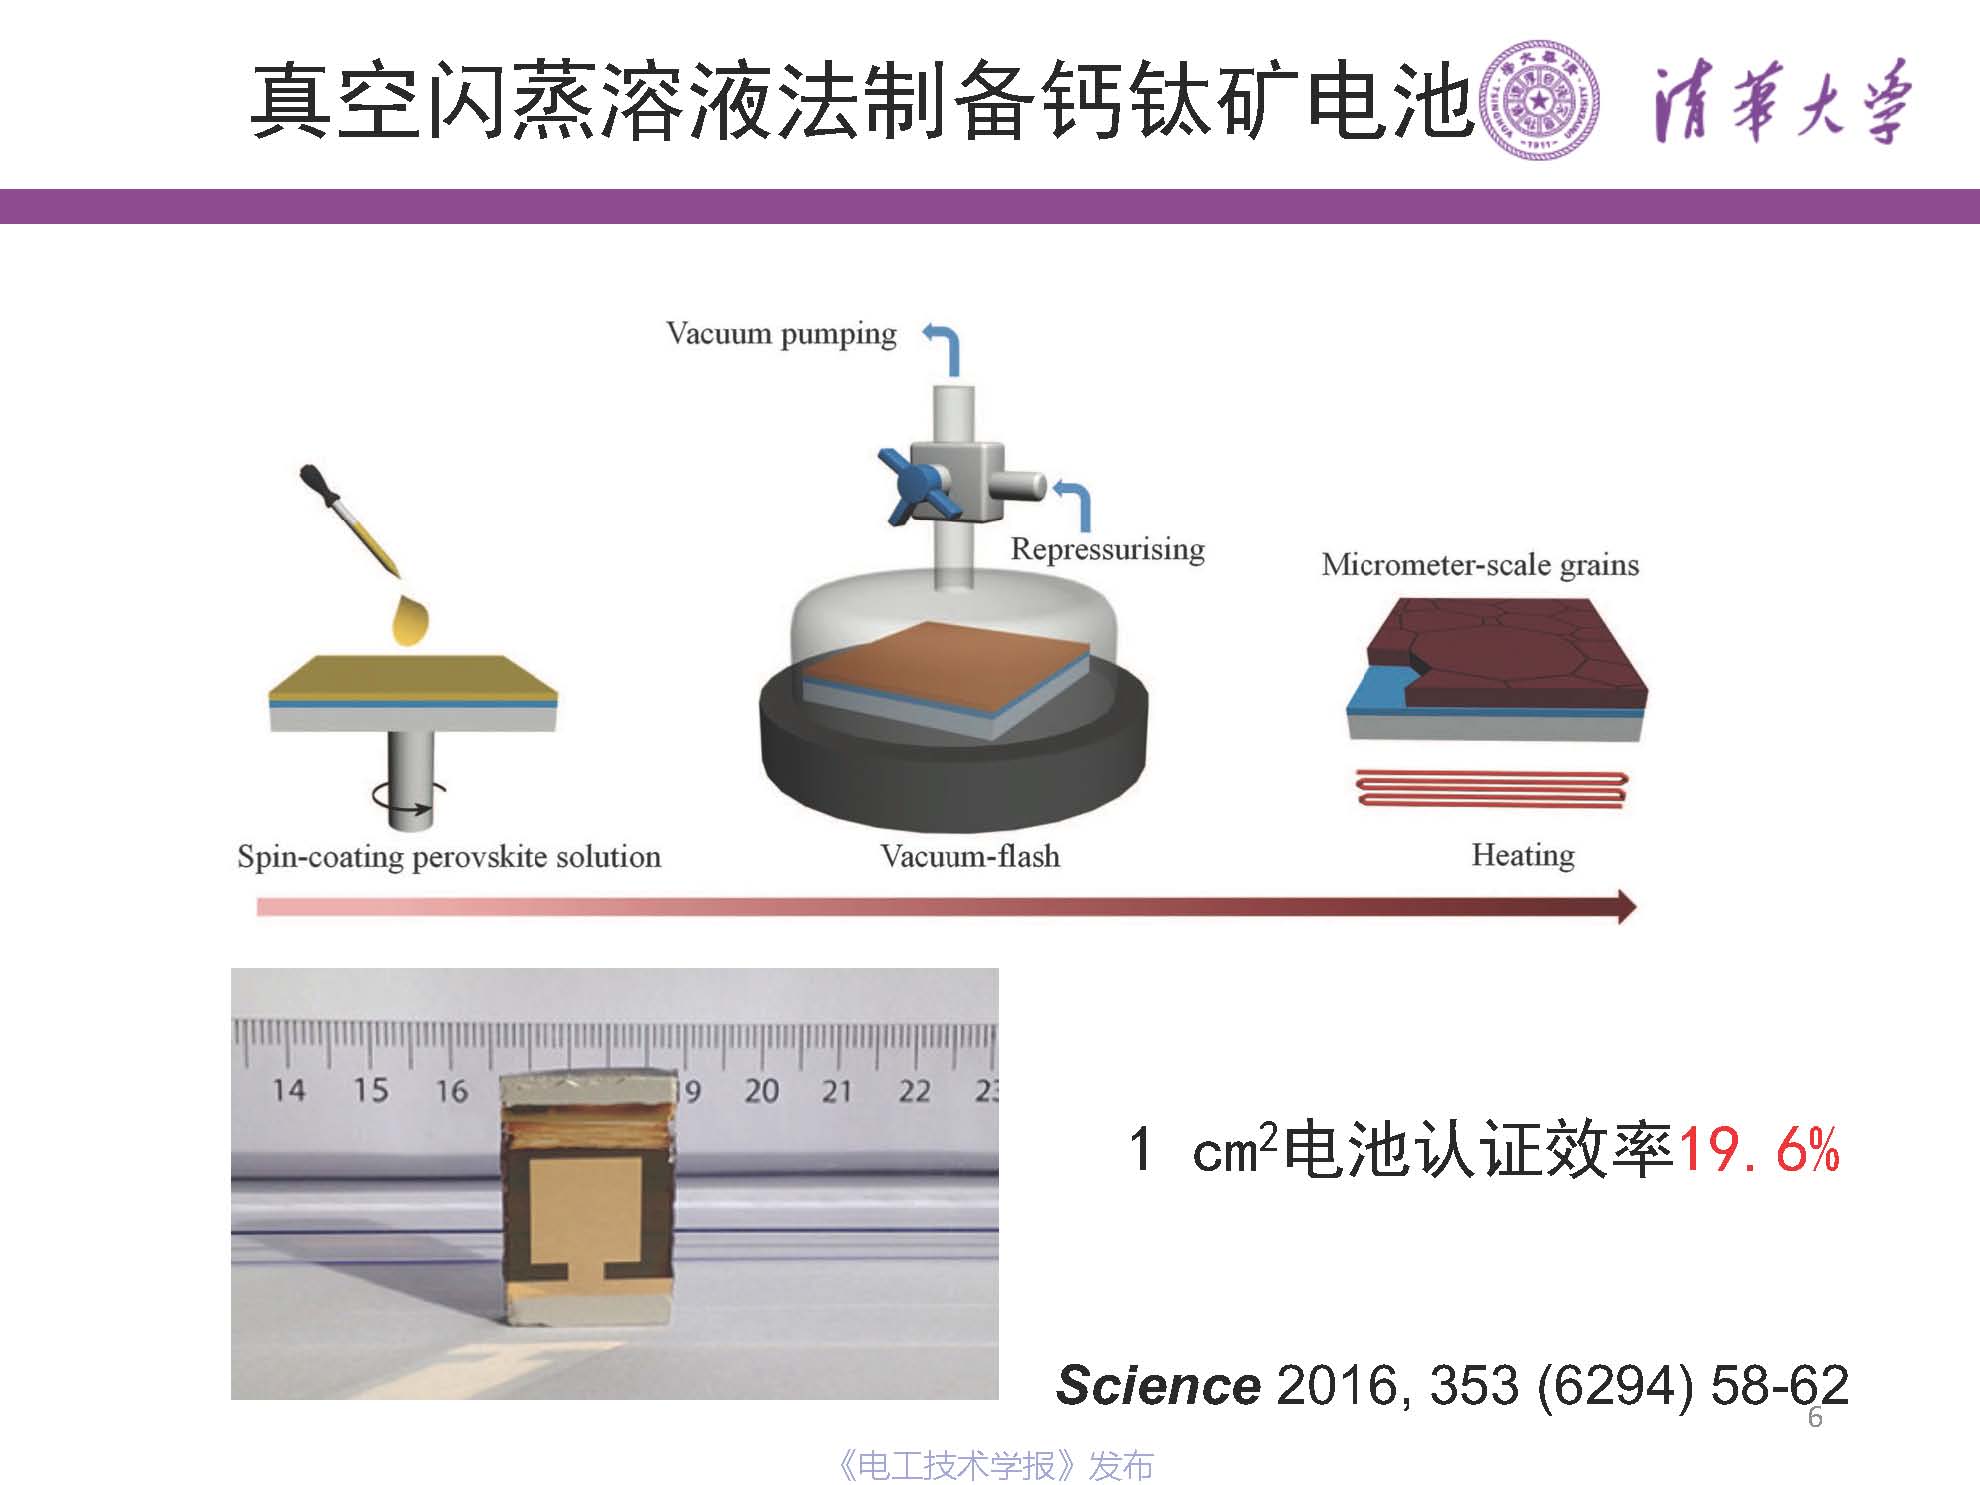 清华大学 易陈谊 副教授：钙钛矿光伏的历史、现状与未来